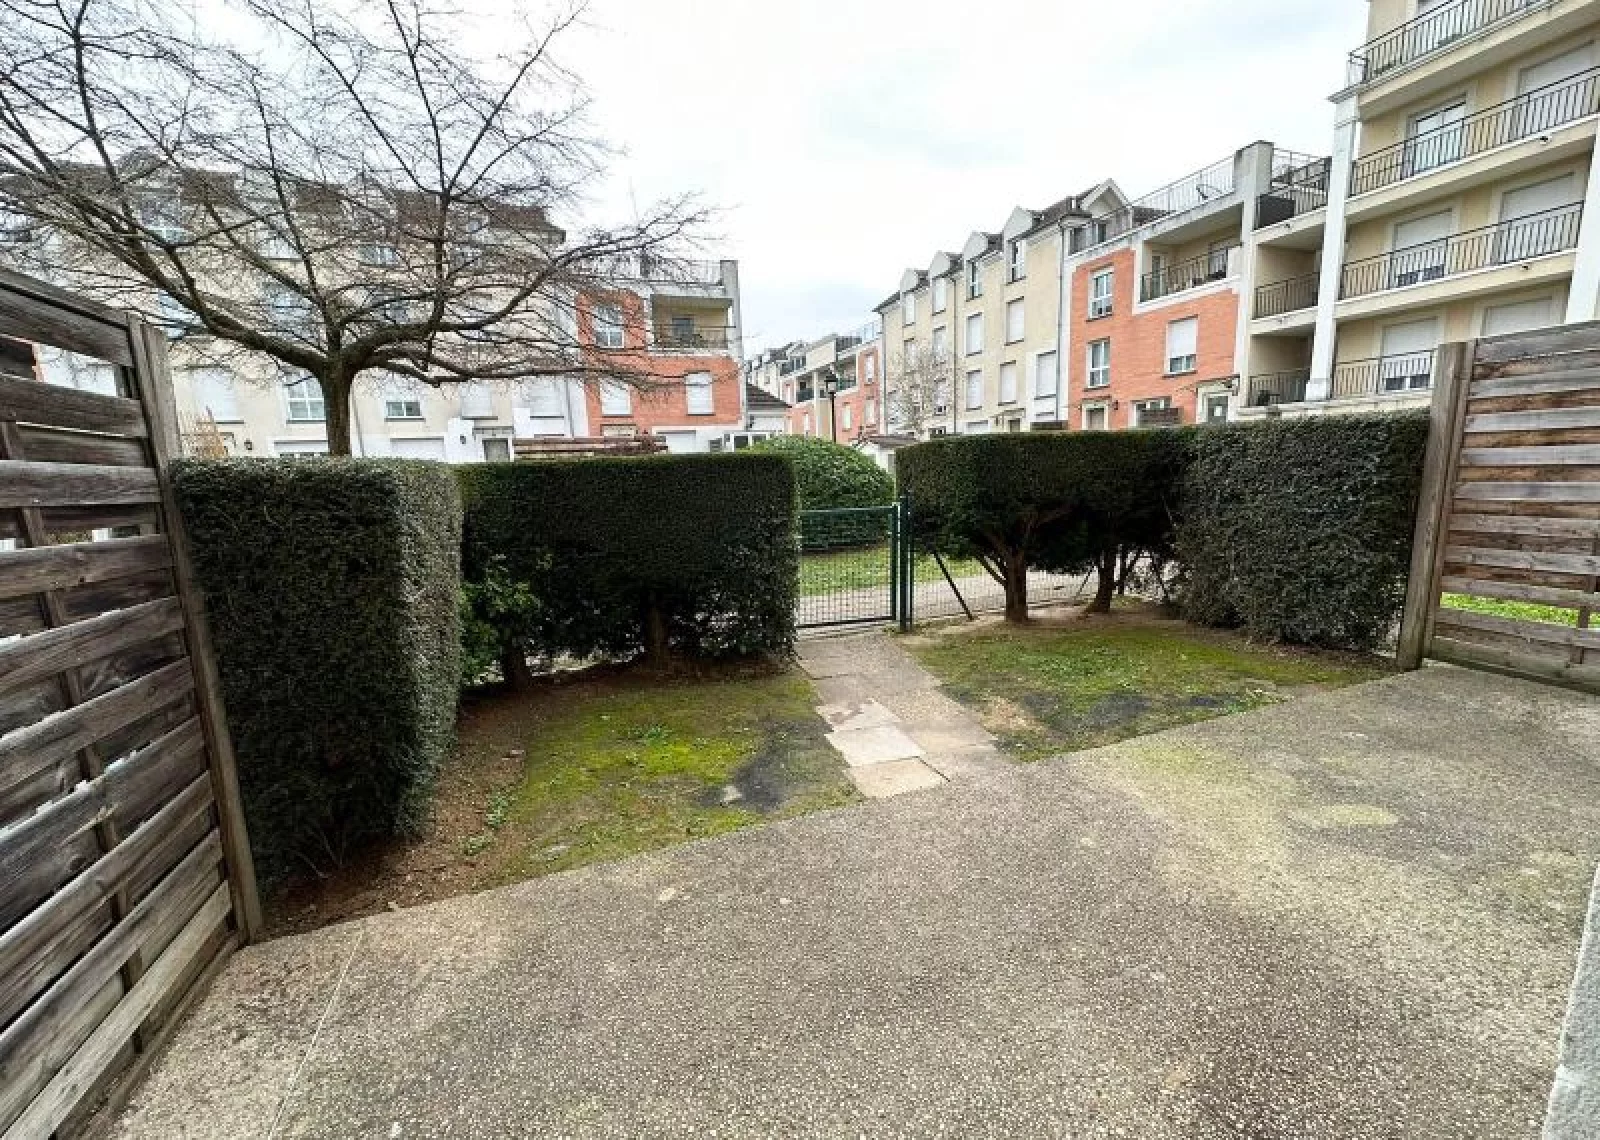 Location appartement meubl duplex 4 pices 80m (Paris est - Bry s/ Marne)